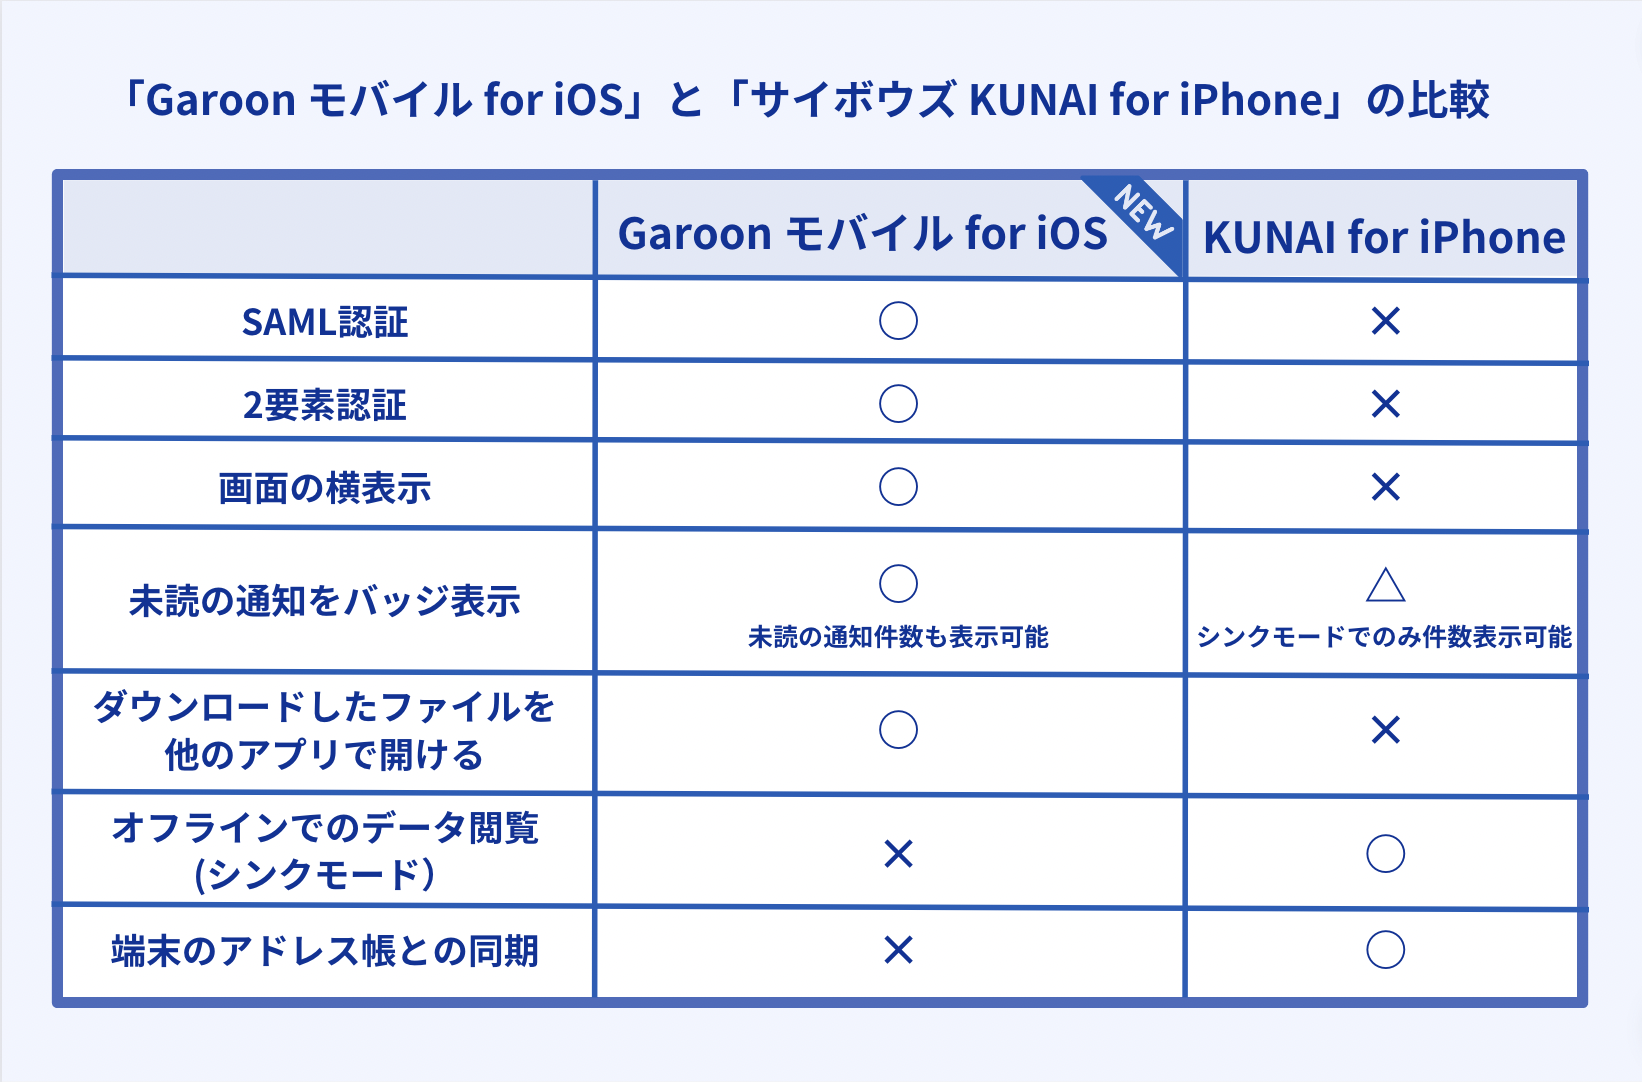 「サイボウズ KUNAI」と「Garoon モバイル」の iOS機能比較表